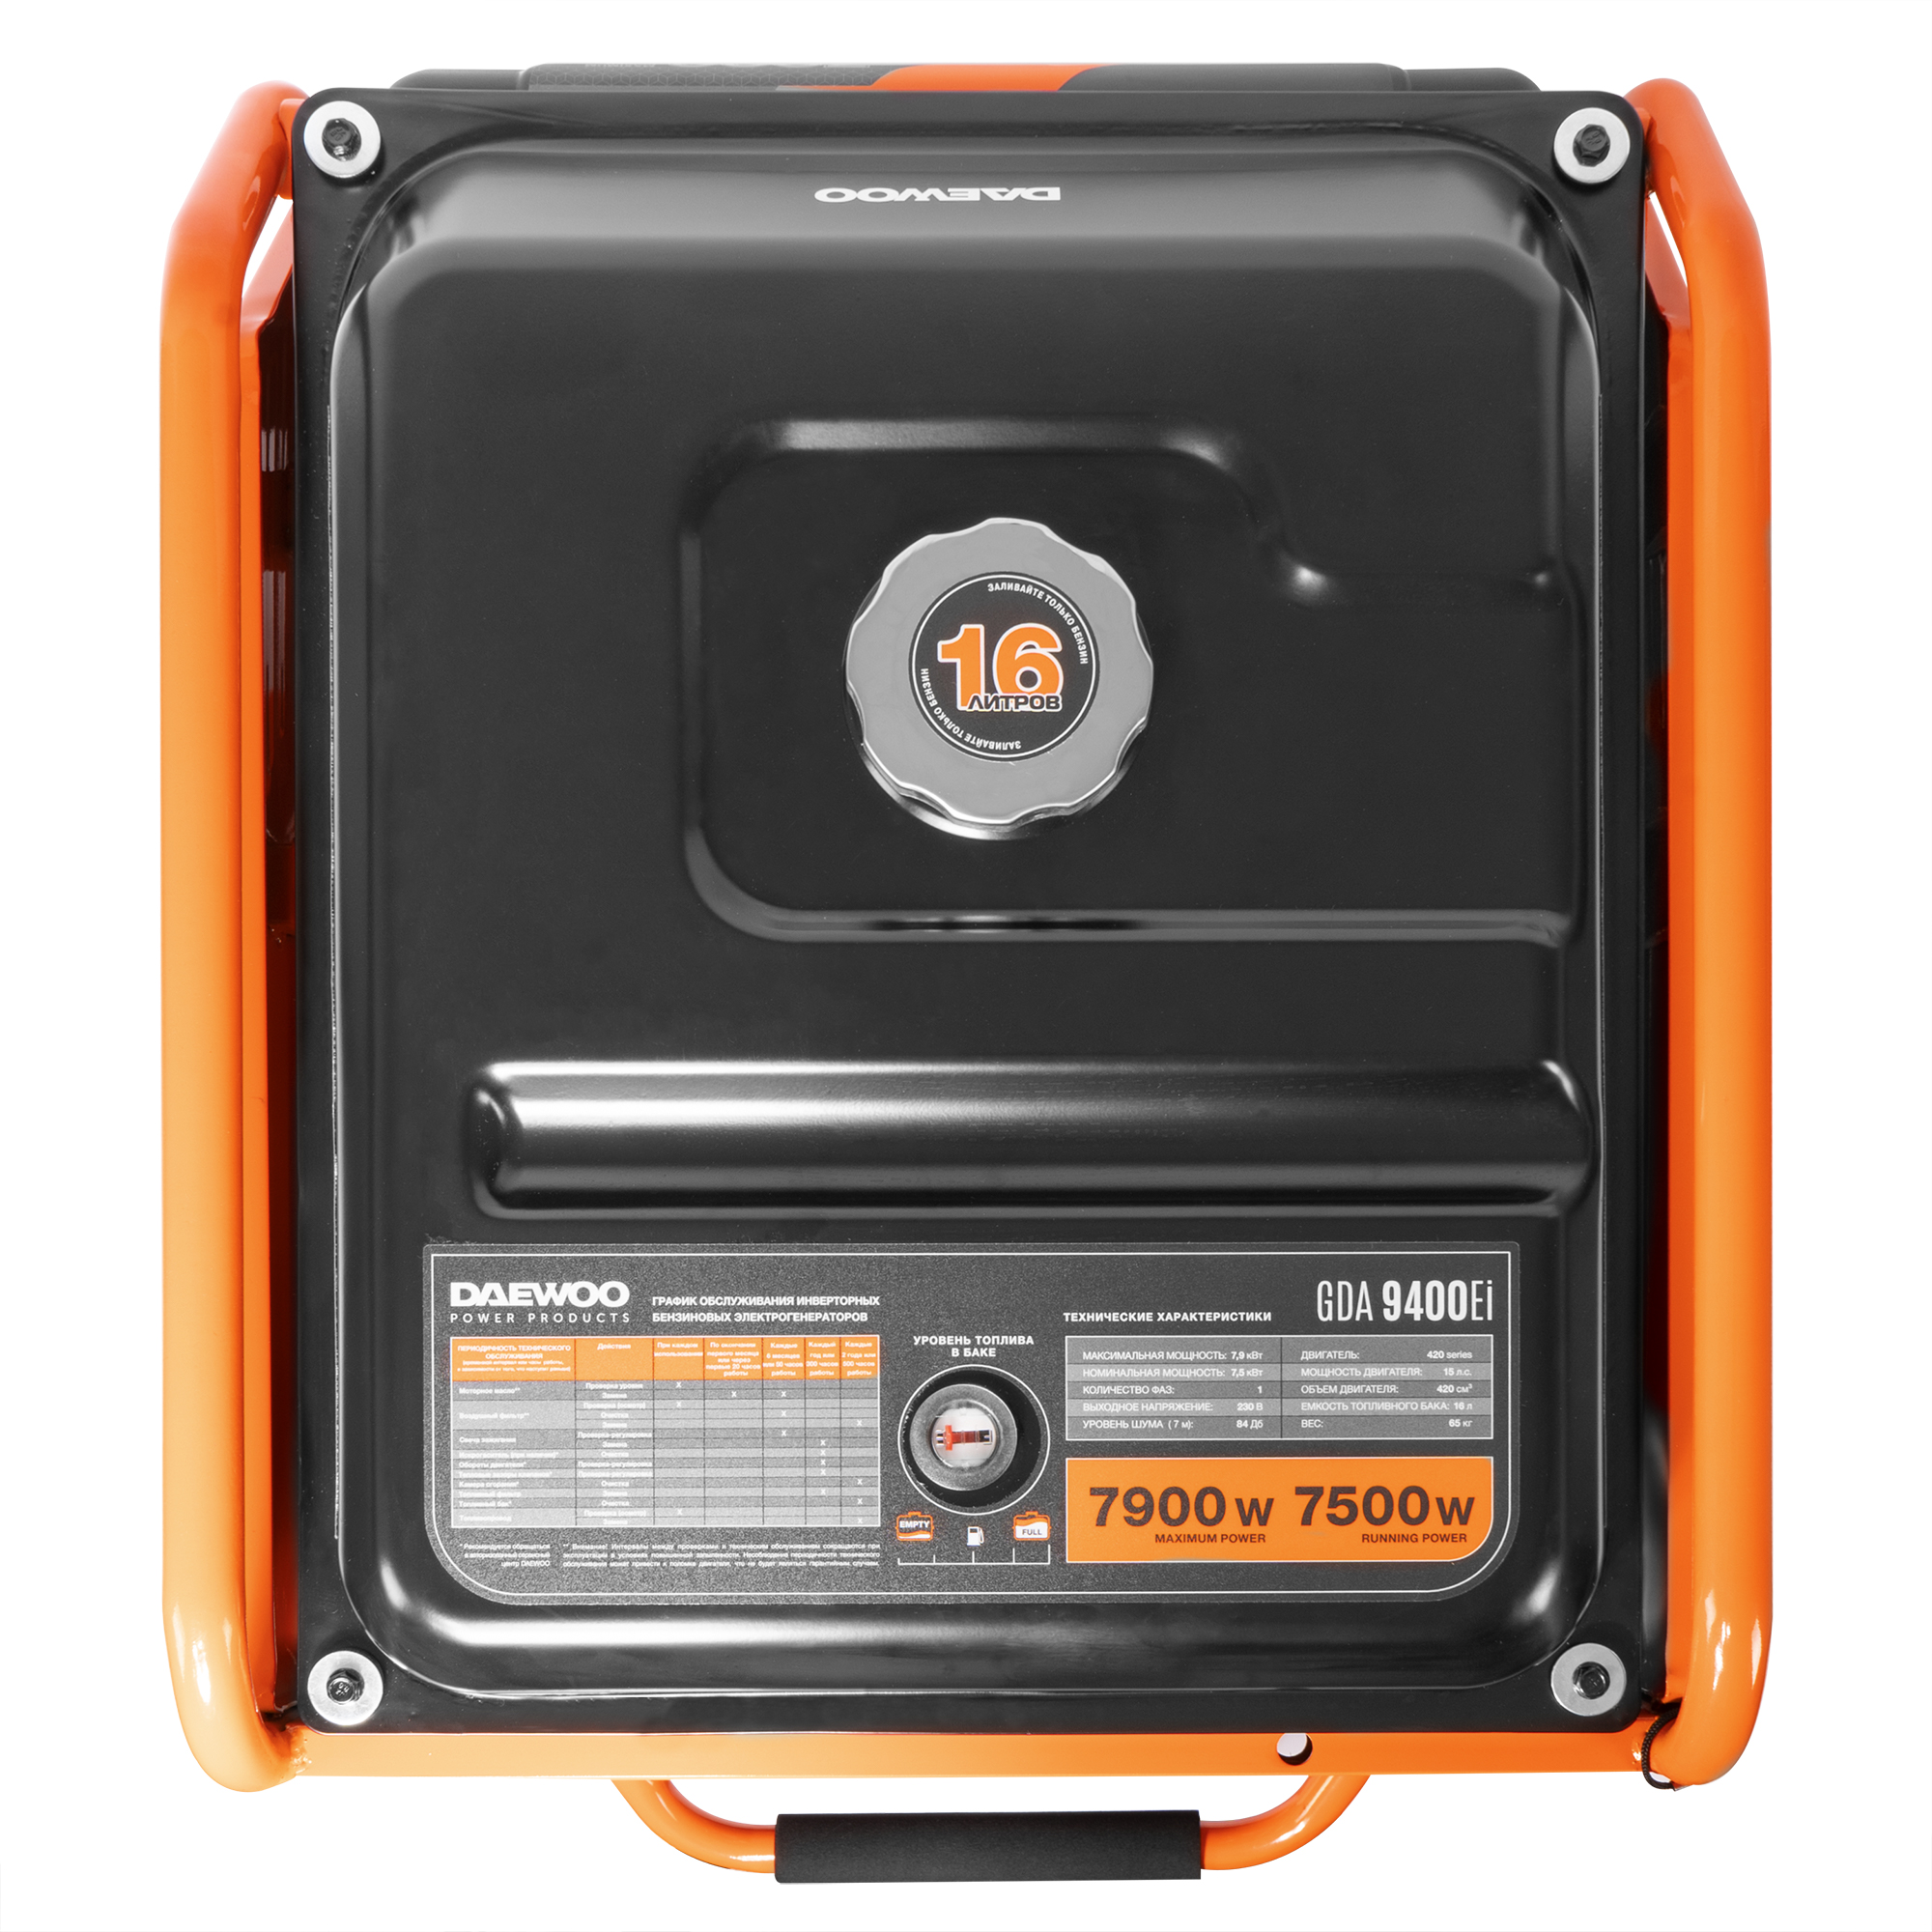 Генератор бензиновый DAEWOO инверторный (GDA 9400EI), цвет оранжевый series 420 - фото 8